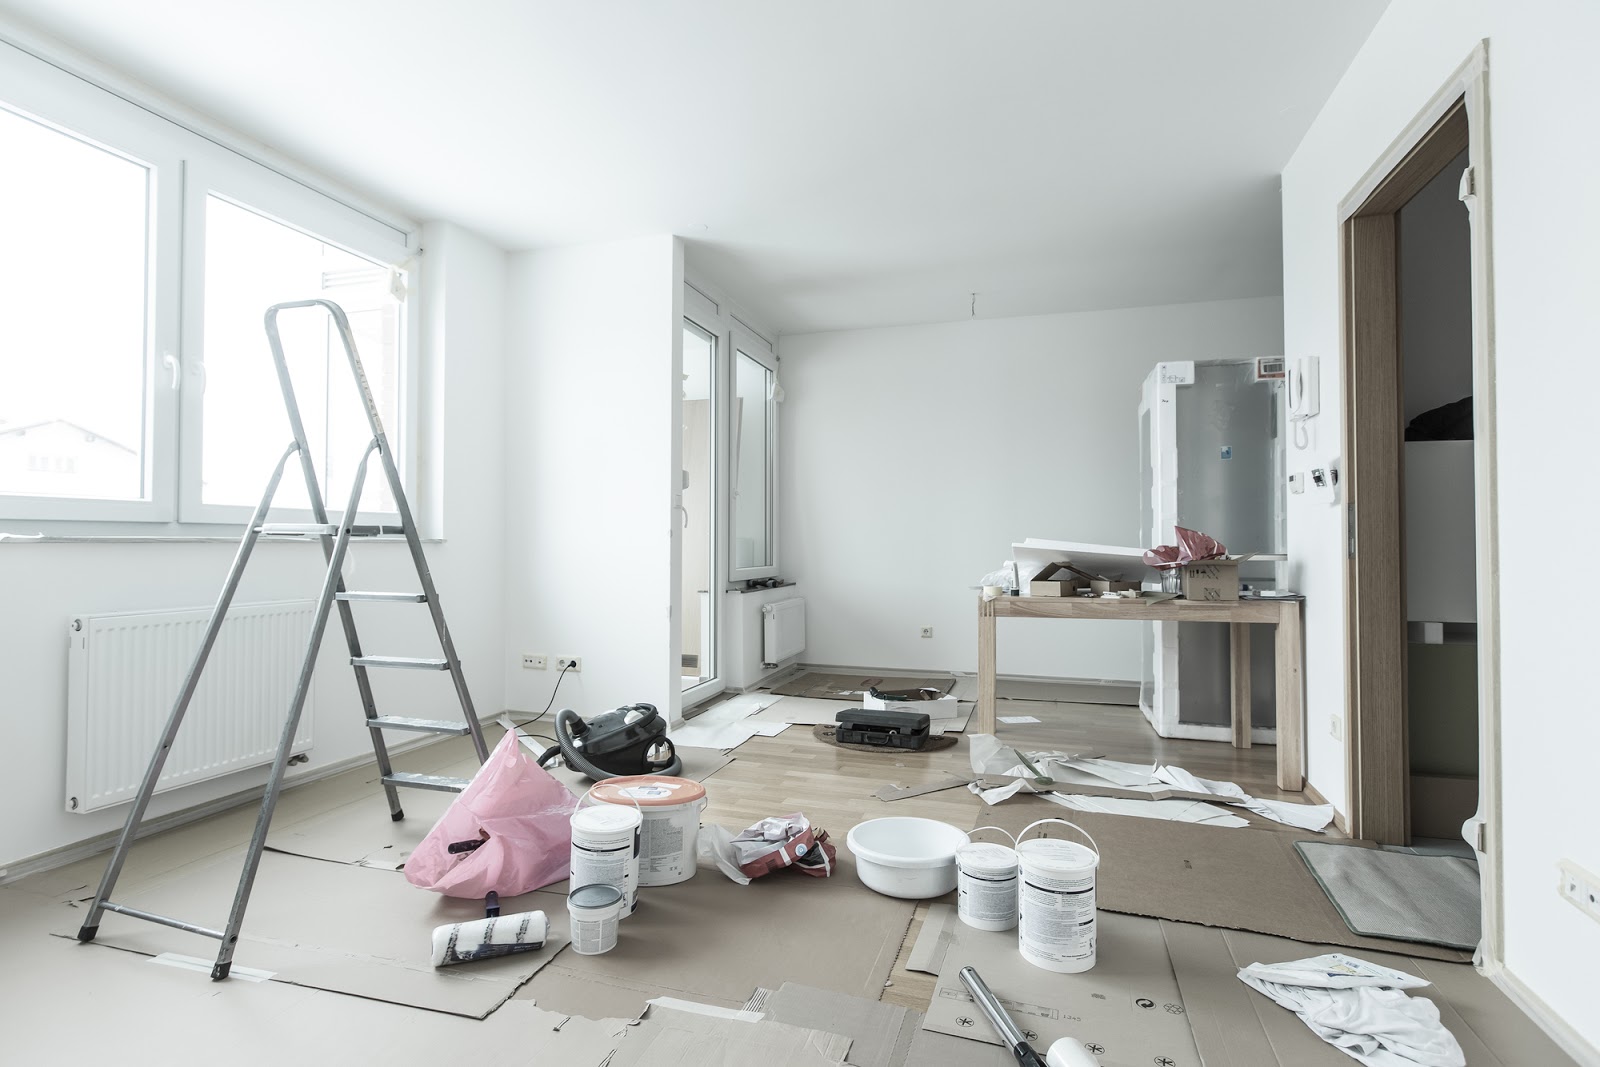 Барнаульцы массово делают ремонты в квартирах и обустраивают дома